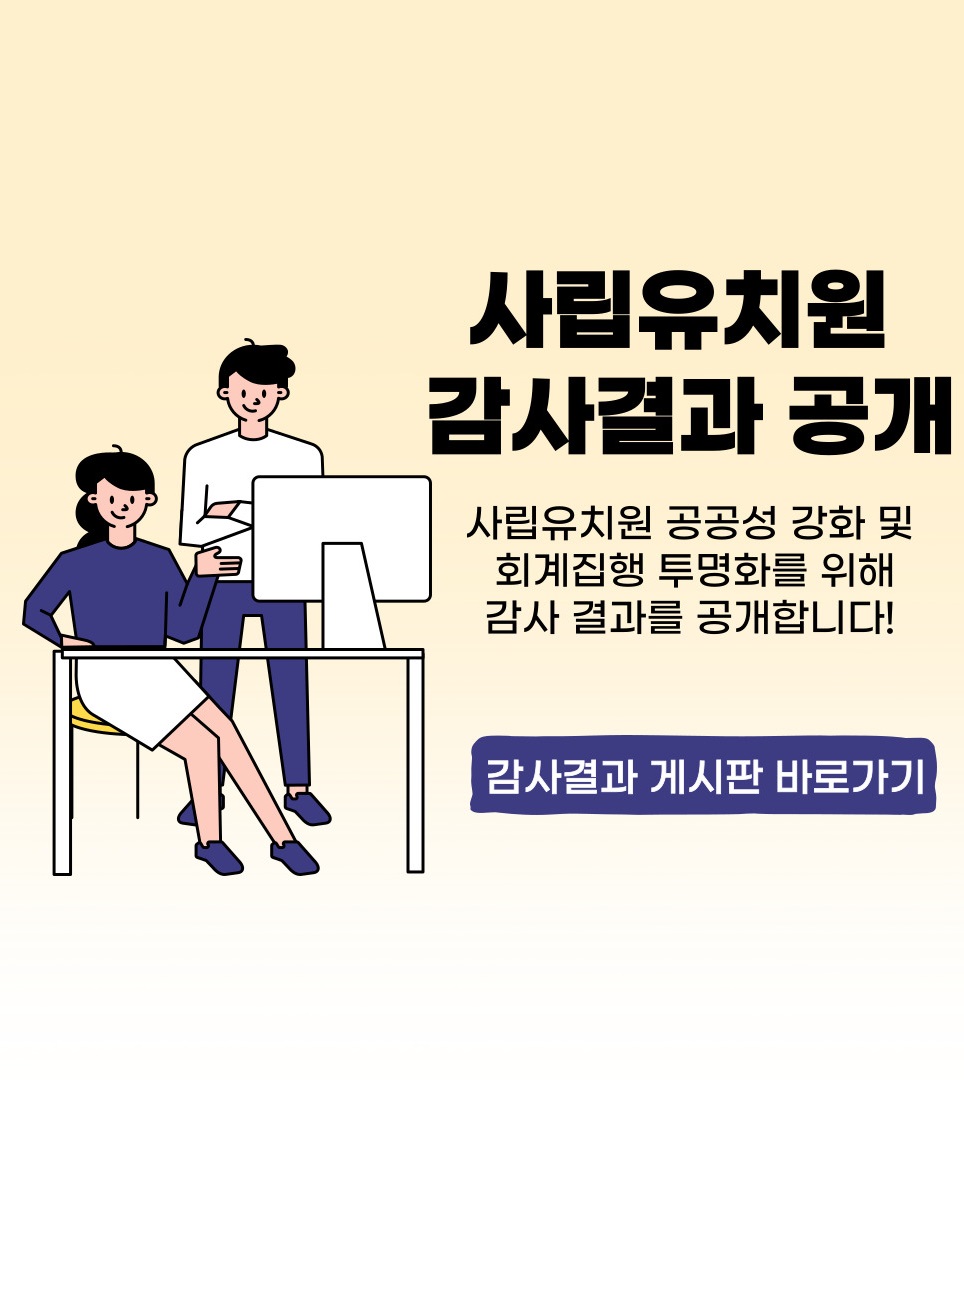 사립유치원 감사결과 공개